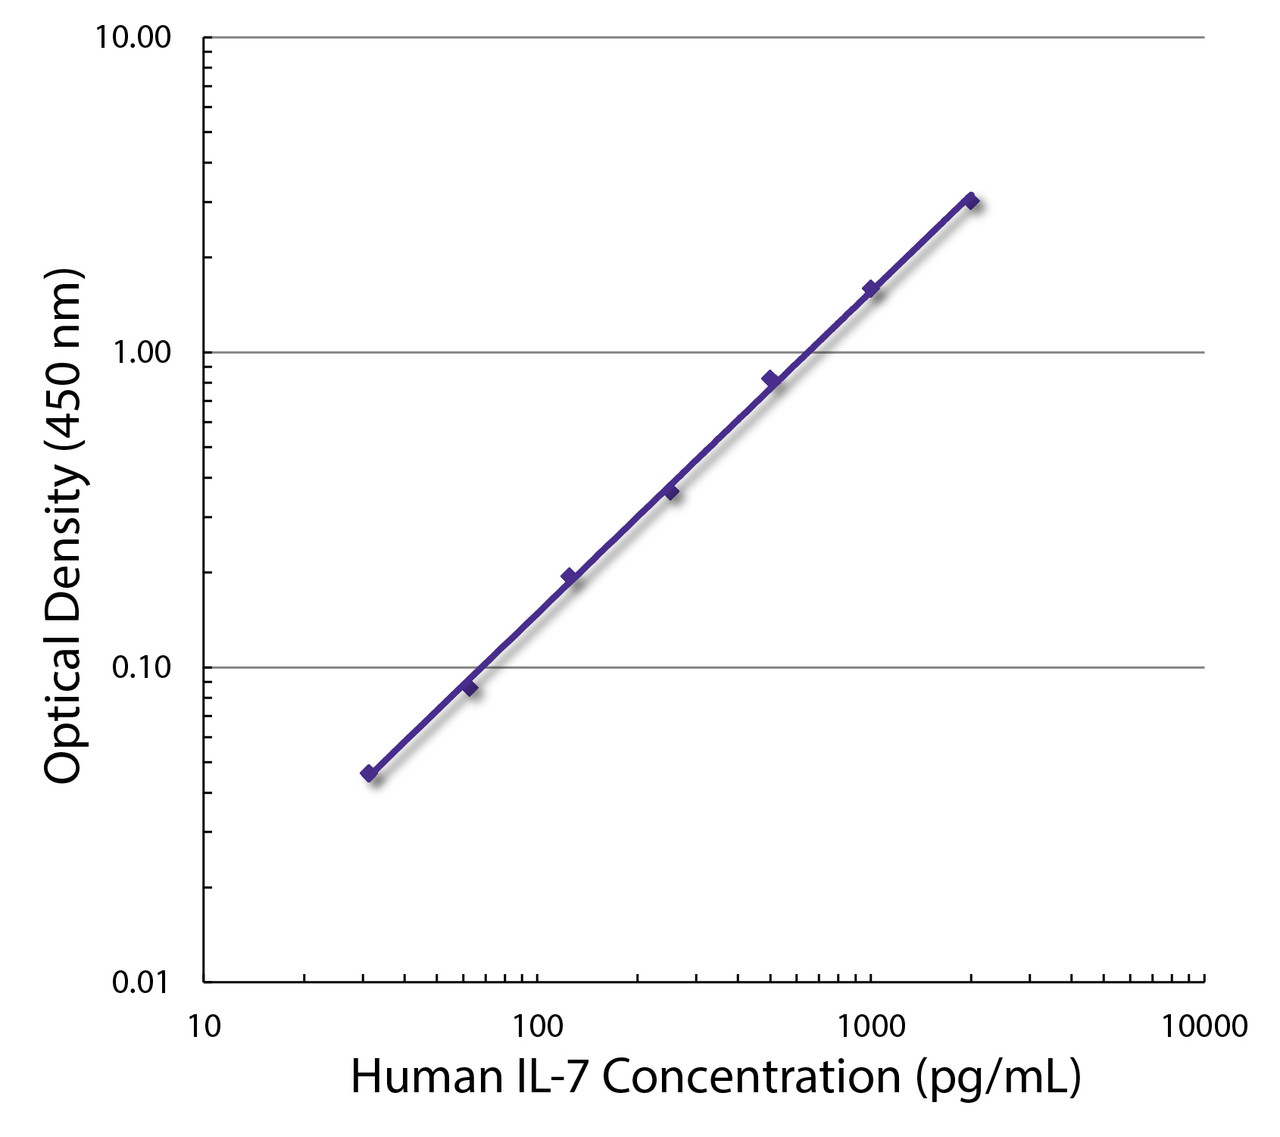 Standard curve generated with Rat Anti-Human IL-7-UNLB (Cat. No. 10122-01; Clone BVD10-40F6) and Rat Anti-Human IL-7-BIOT (Cat. No. 99-668; Clone BVD10-11C10) followed by Mouse Anti-BIOT-HRP